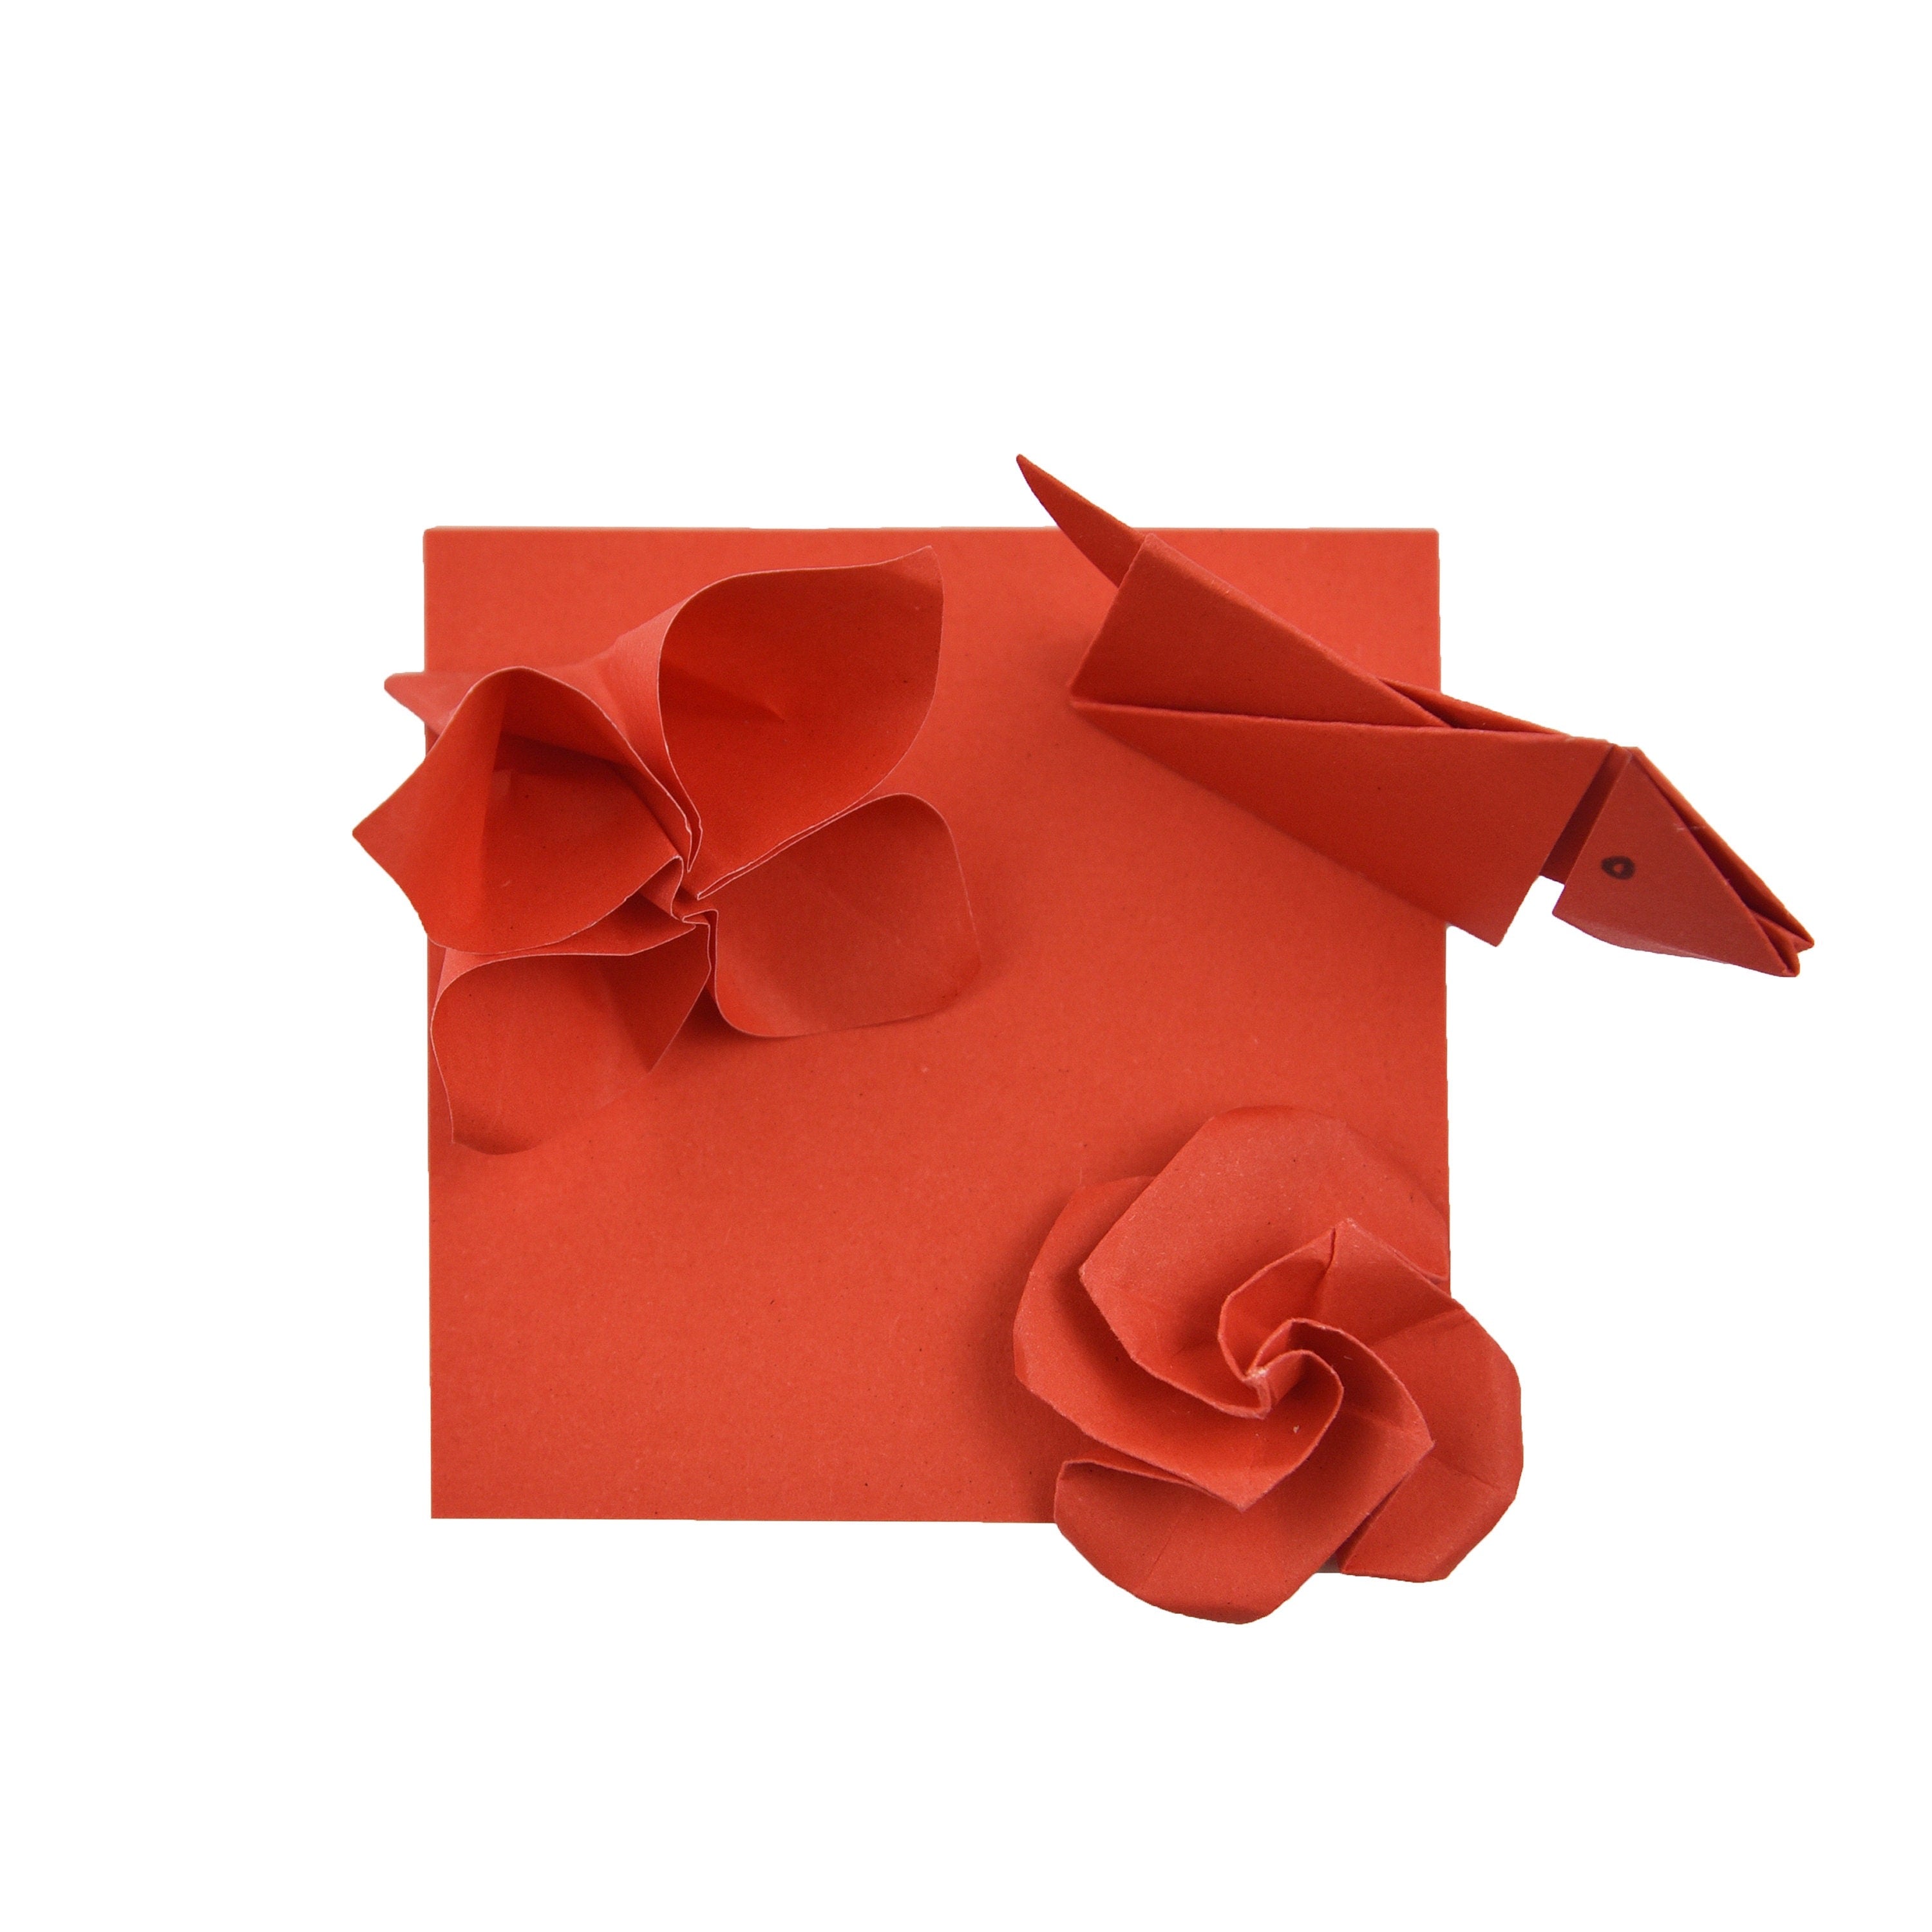 100 Hojas de Papel Origami - 3x3 pulgadas - Paquete de Papel Cuadrado para Plegar, Grullas de Origami y Decoración - S04